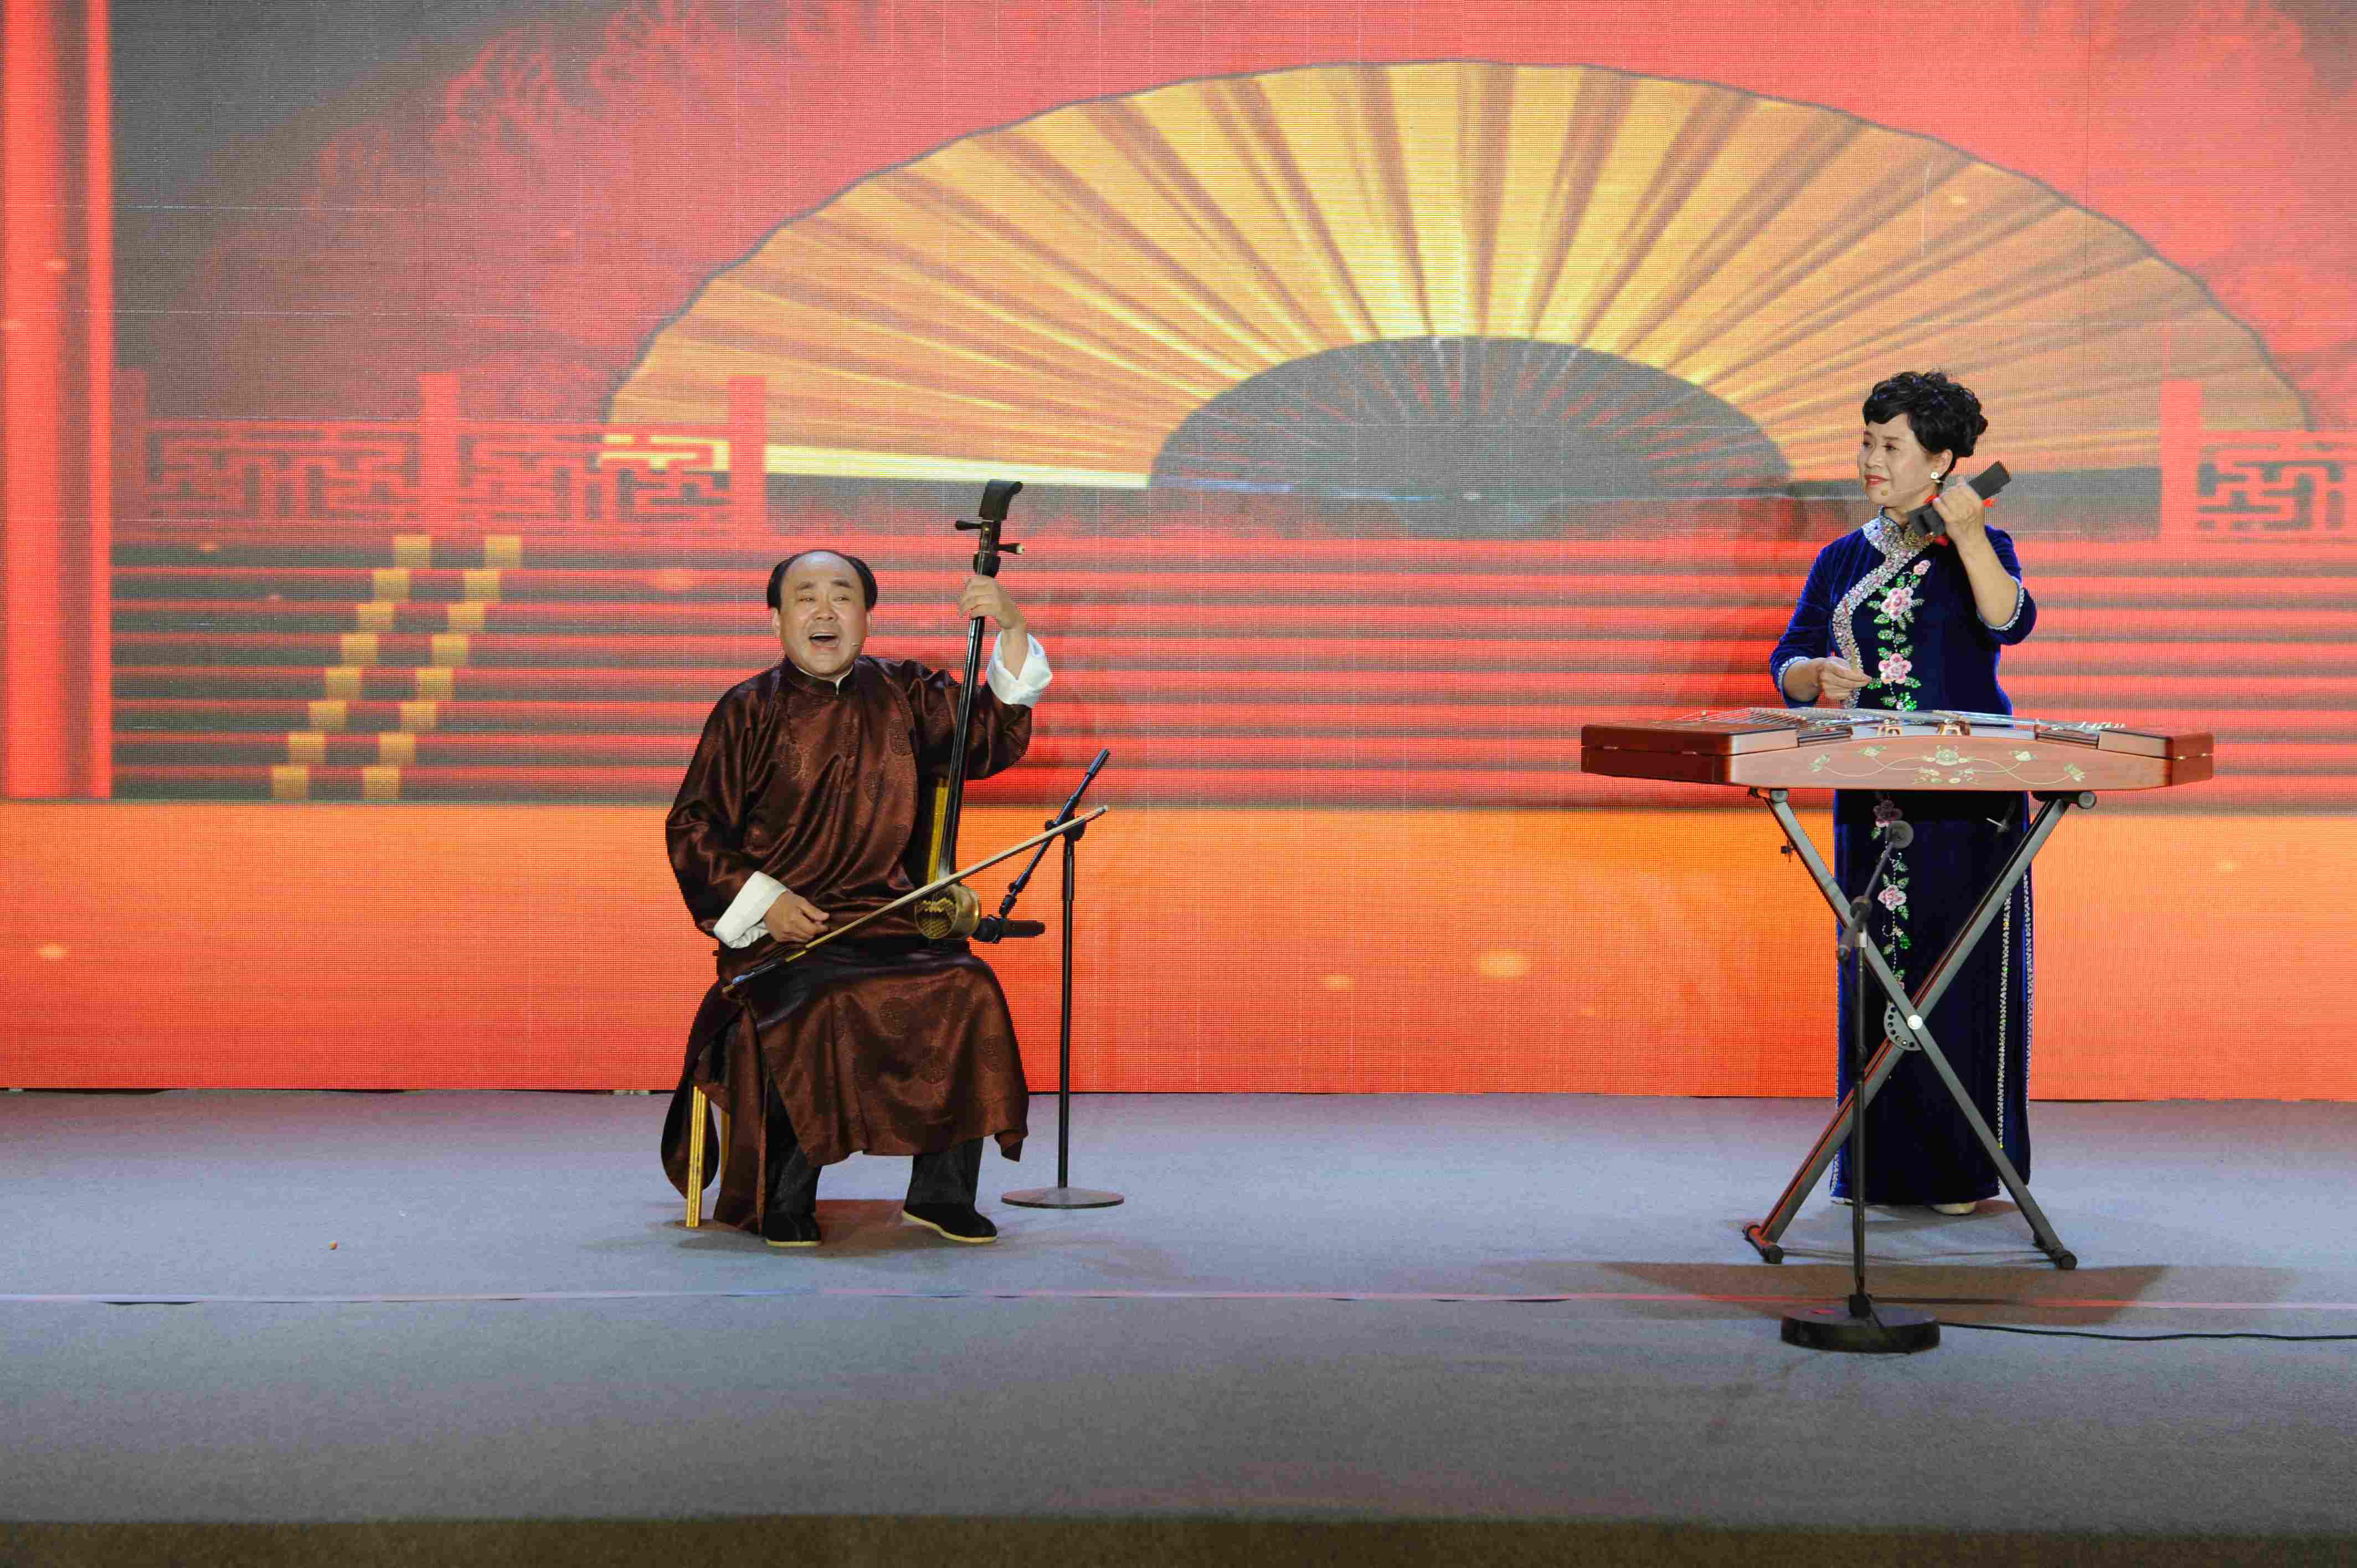 菏泽市山东琴书国家级传承人刘士福演出场景(拍摄于2019年10月)